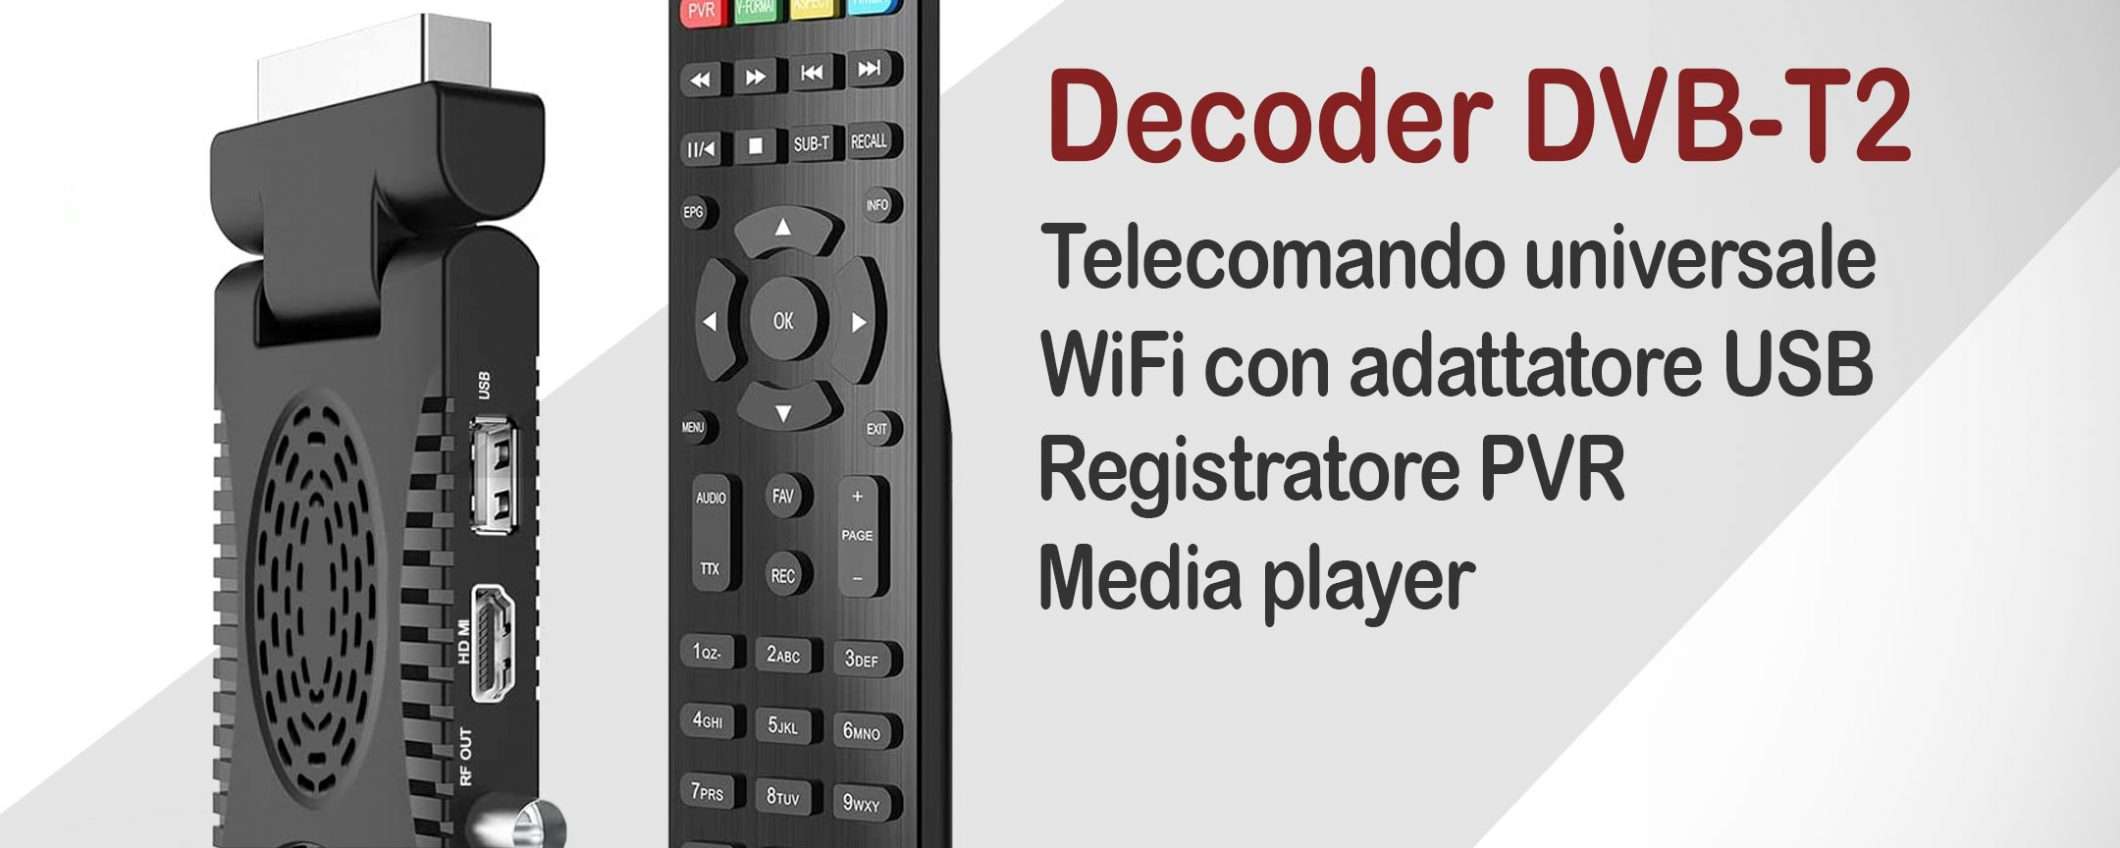 Decoder DVB-T2 multifunzione: SUPER PREZZO Amazon